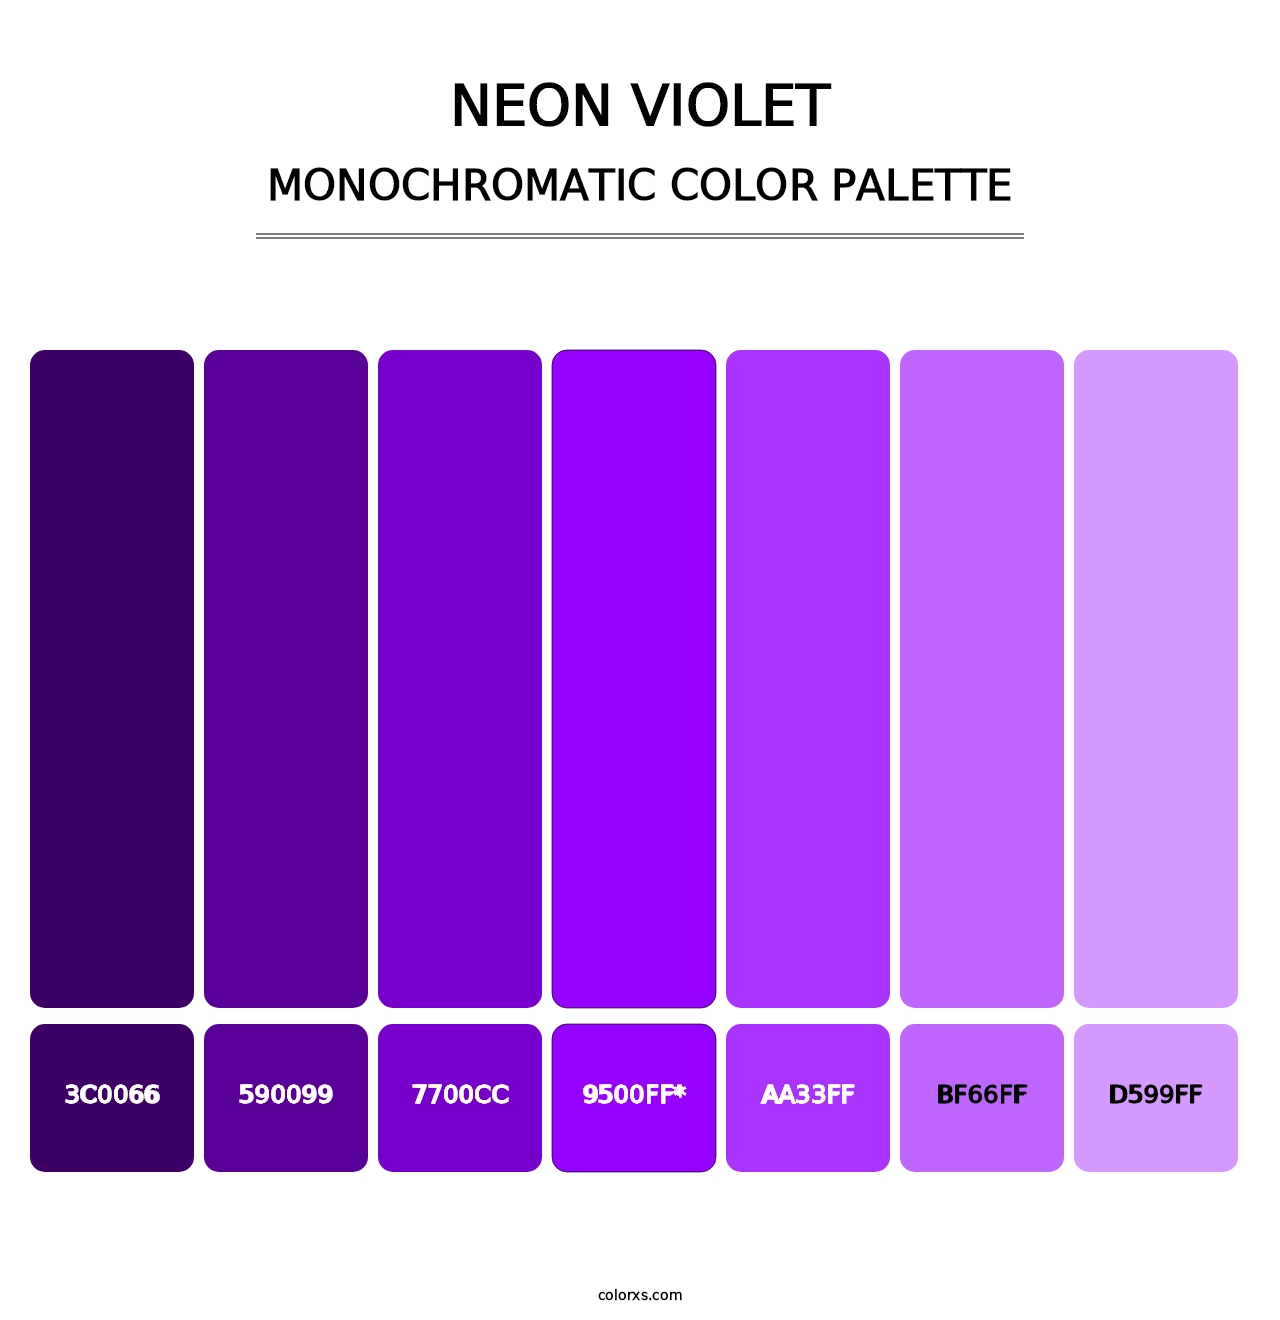 Neon Violet - Monochromatic Color Palette